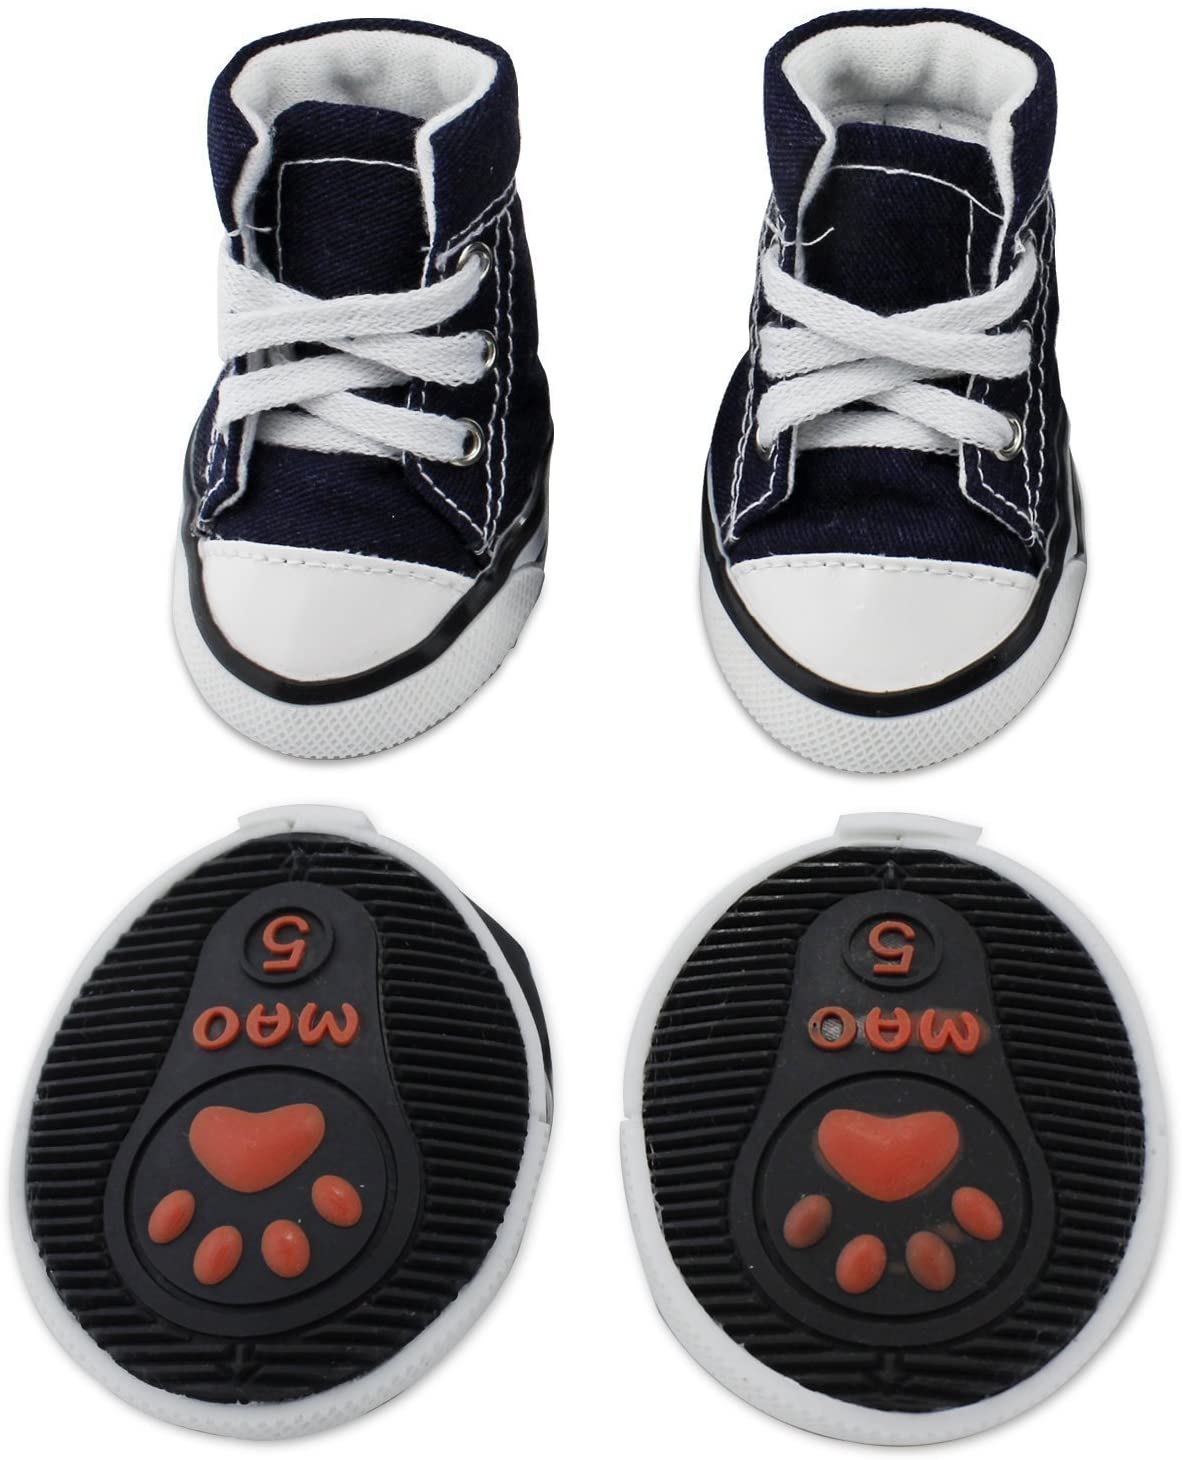  KEESIN Zapatos de Lona Antideslizantes para Perros Cachorros, Protectores de Piernas para Perros, Zapatos Casuales al Aire Libre para Perros #3 